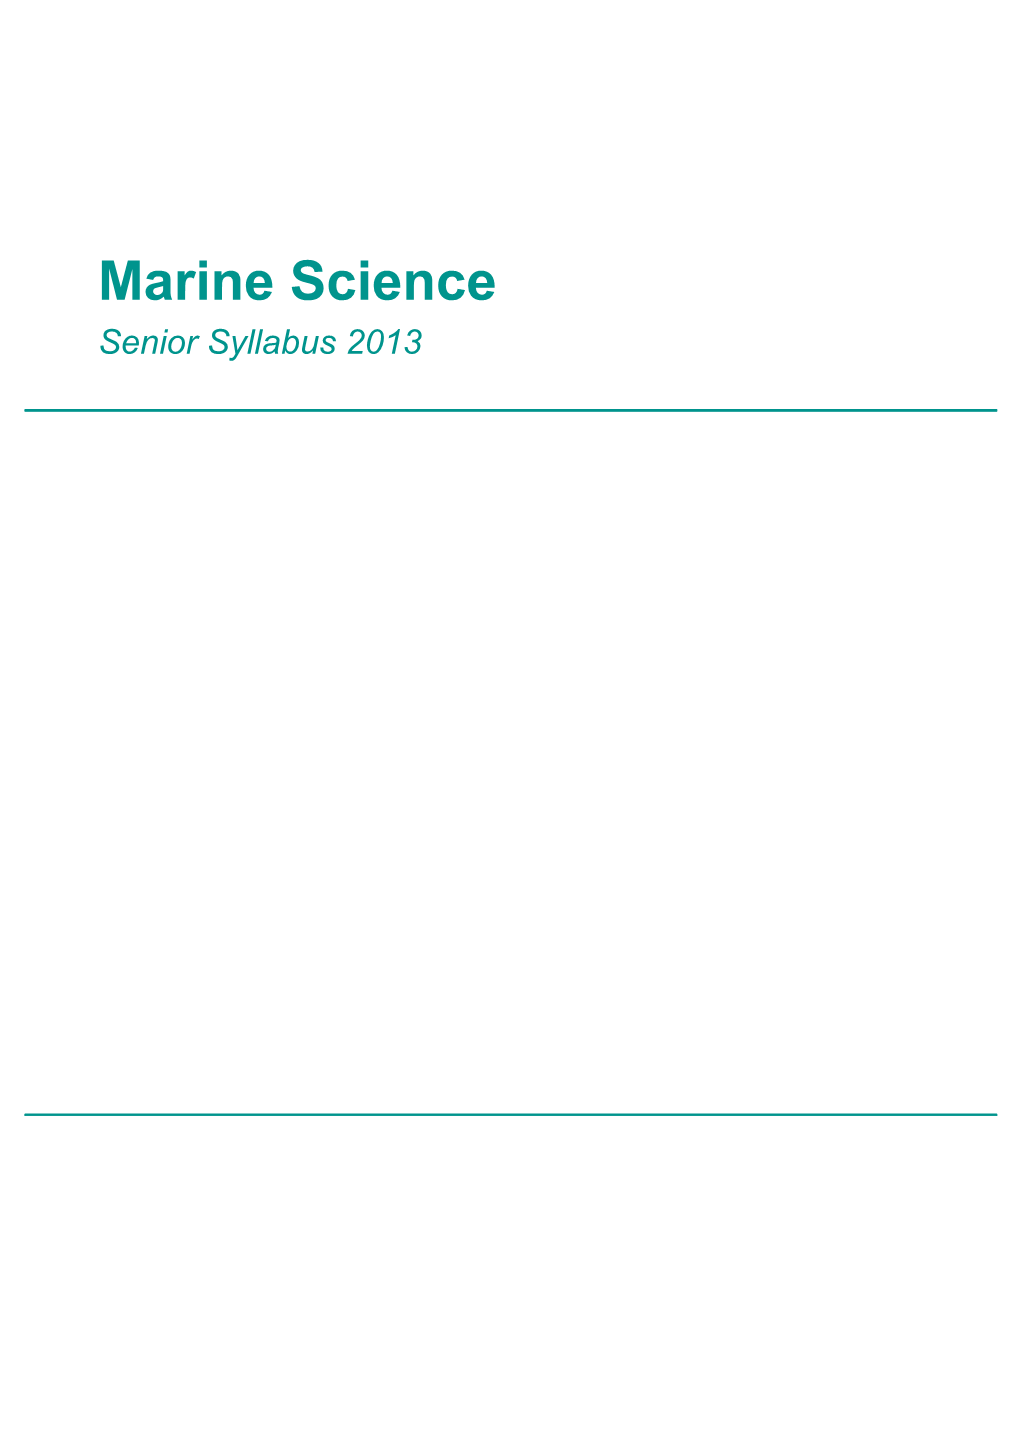 Marine Science Senior Syllabus 2013